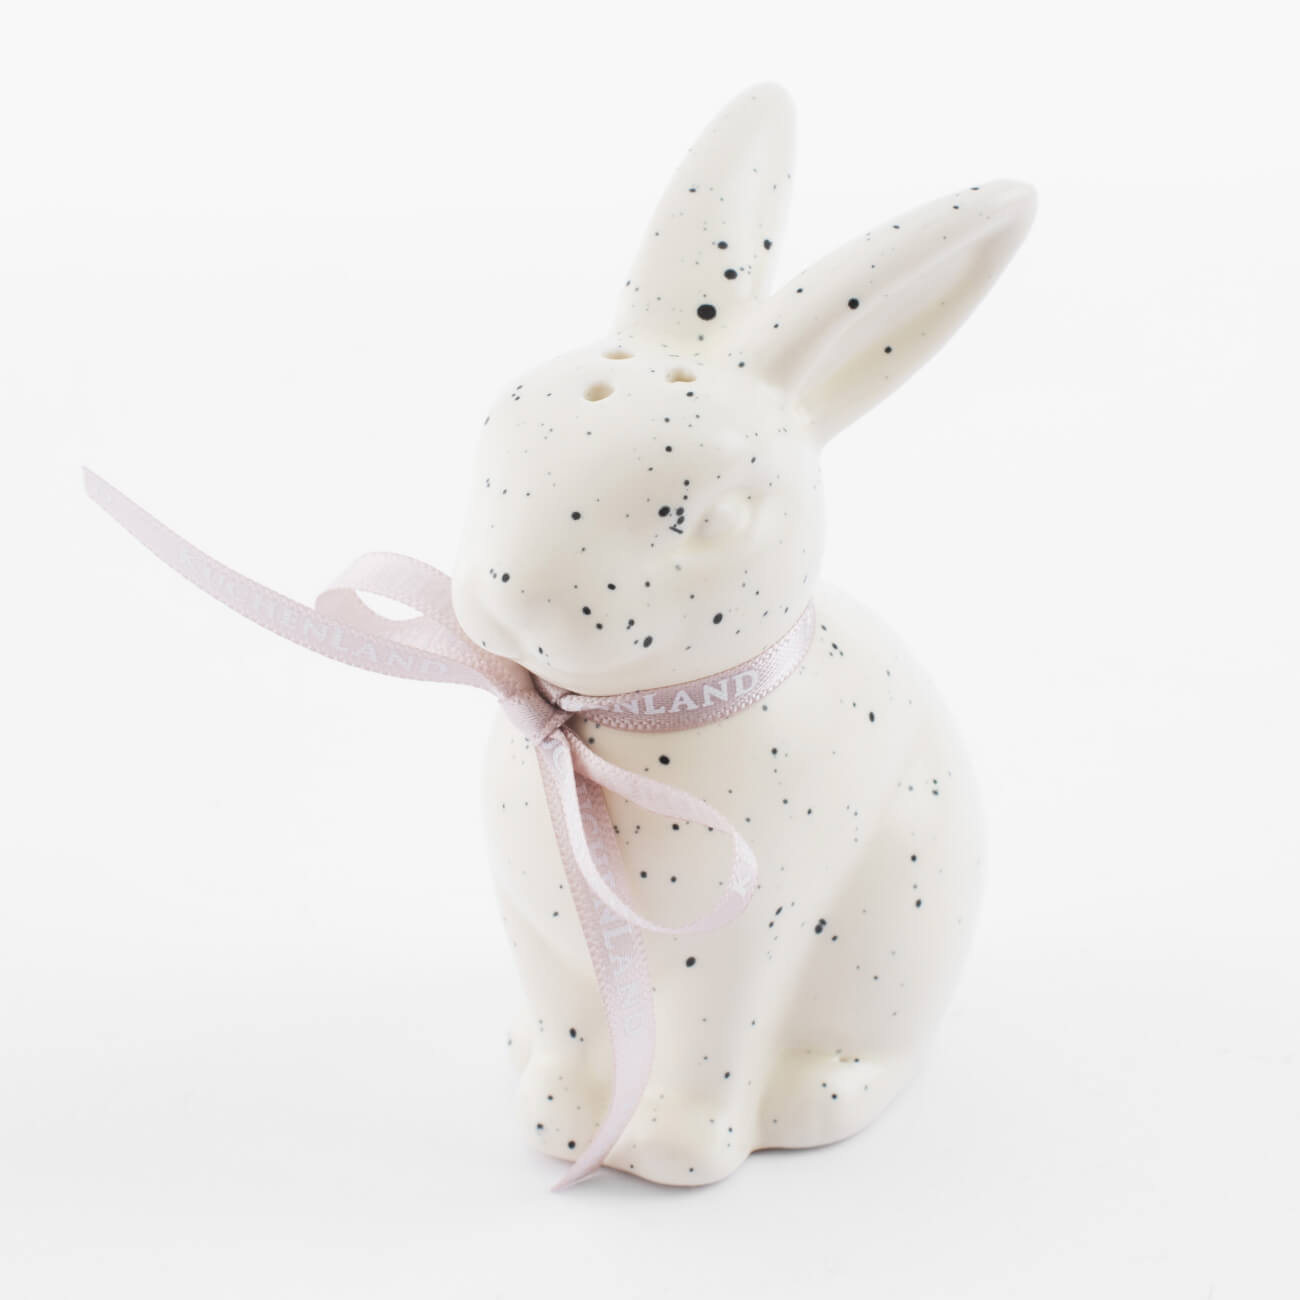 Емкость для соли или перца, 10 см, фарфор P, молочная, в крапинку, Кролик, Natural Easter скатерть 160х160 см полиэстер белая кролик в листве natural easter